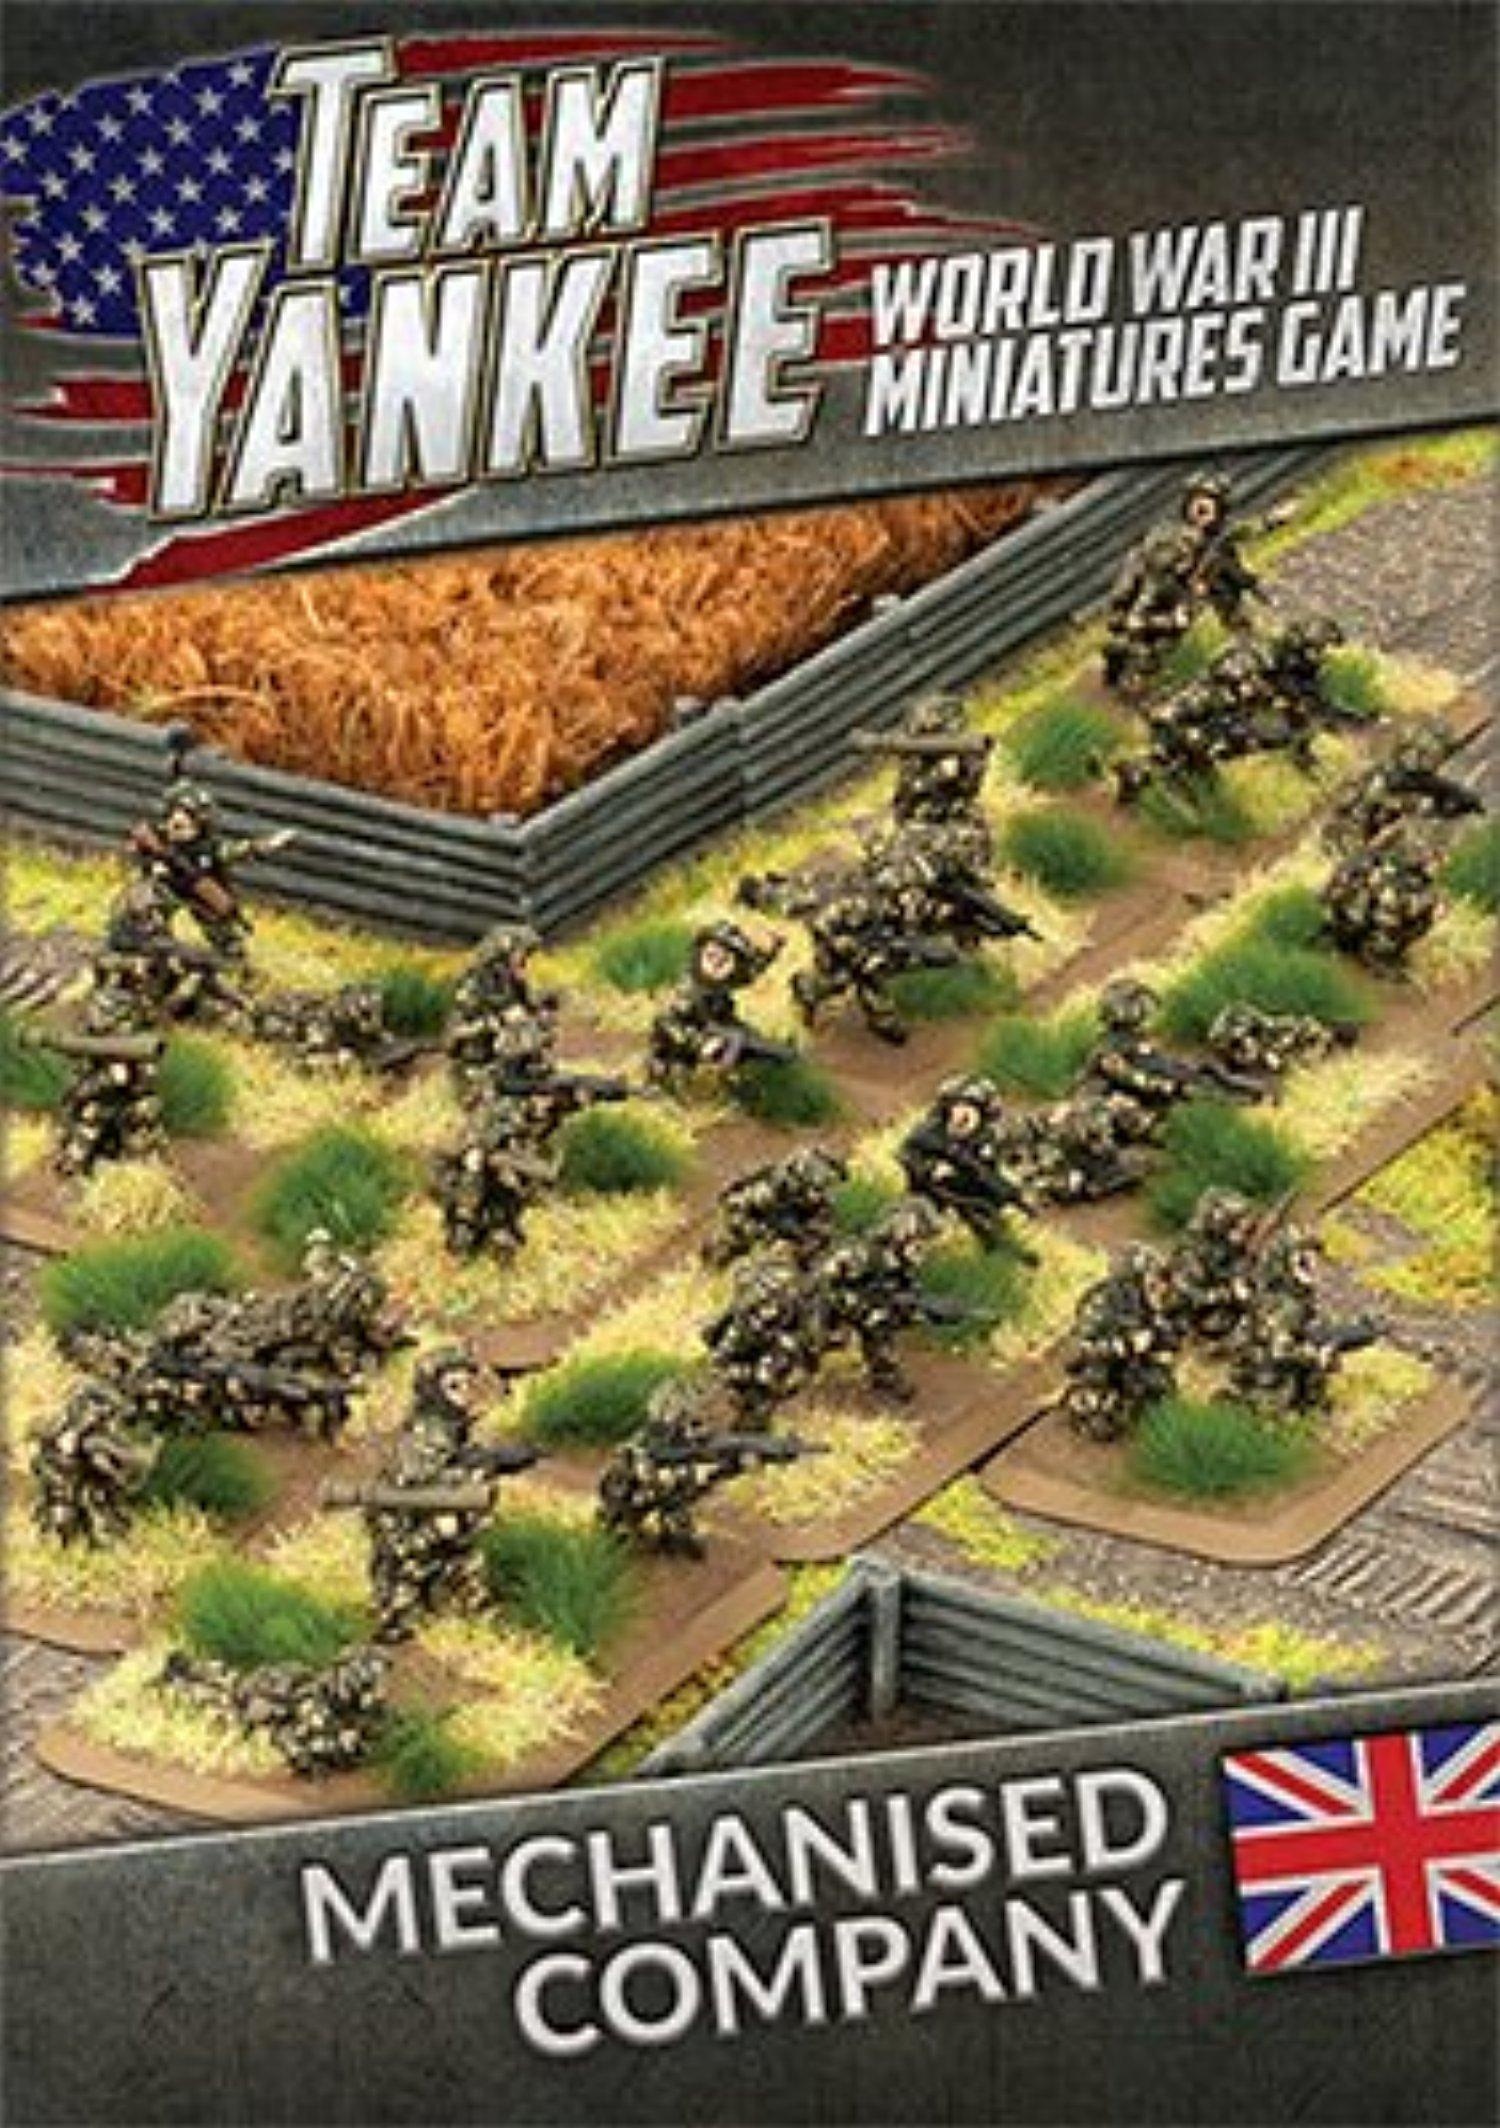 Team Yankee: British Mechanised Company 